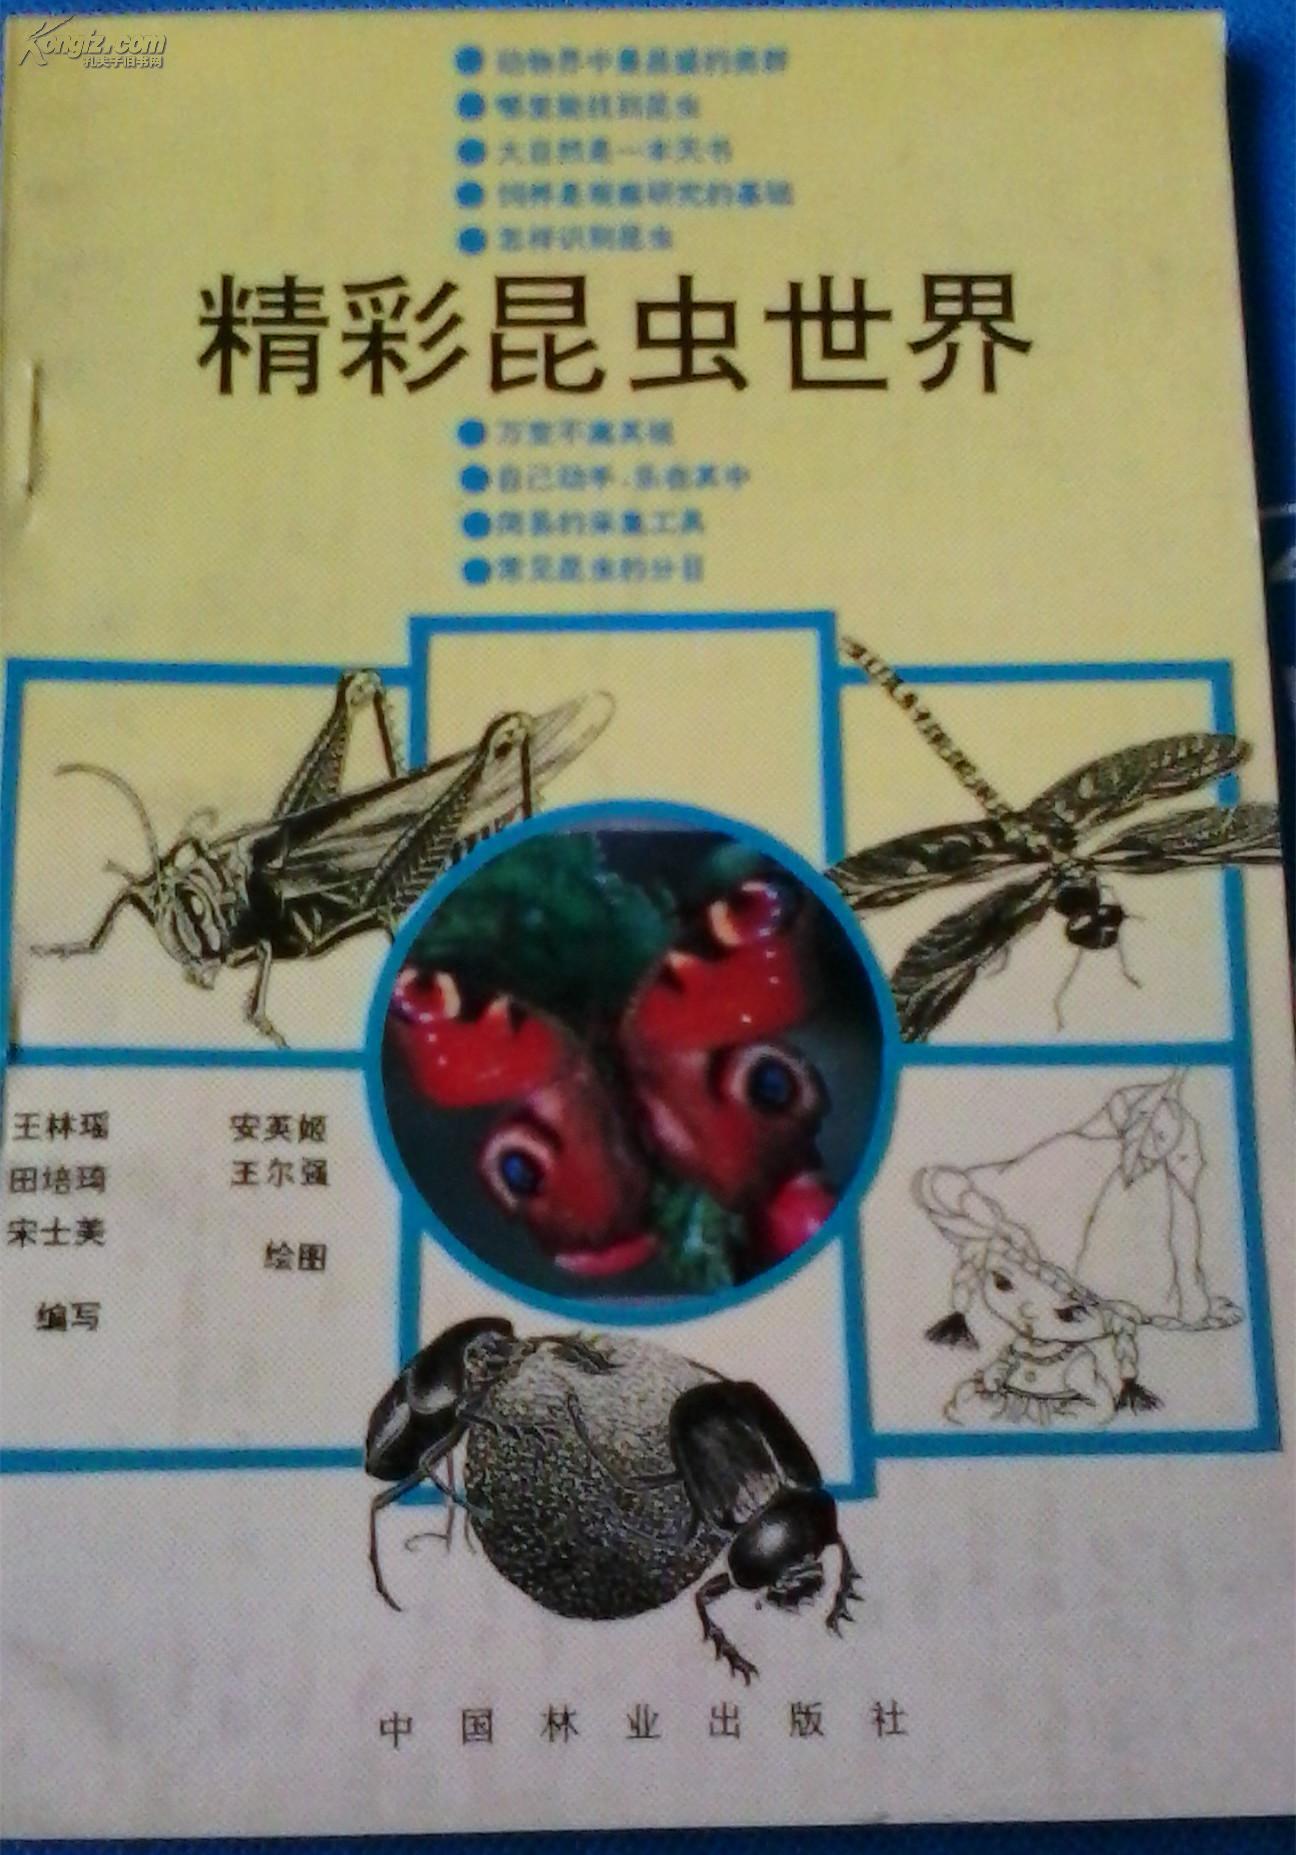 精彩昆虫世界 中国林业出版社1992年1版1印 书中有大量的清晰的昆虫图片